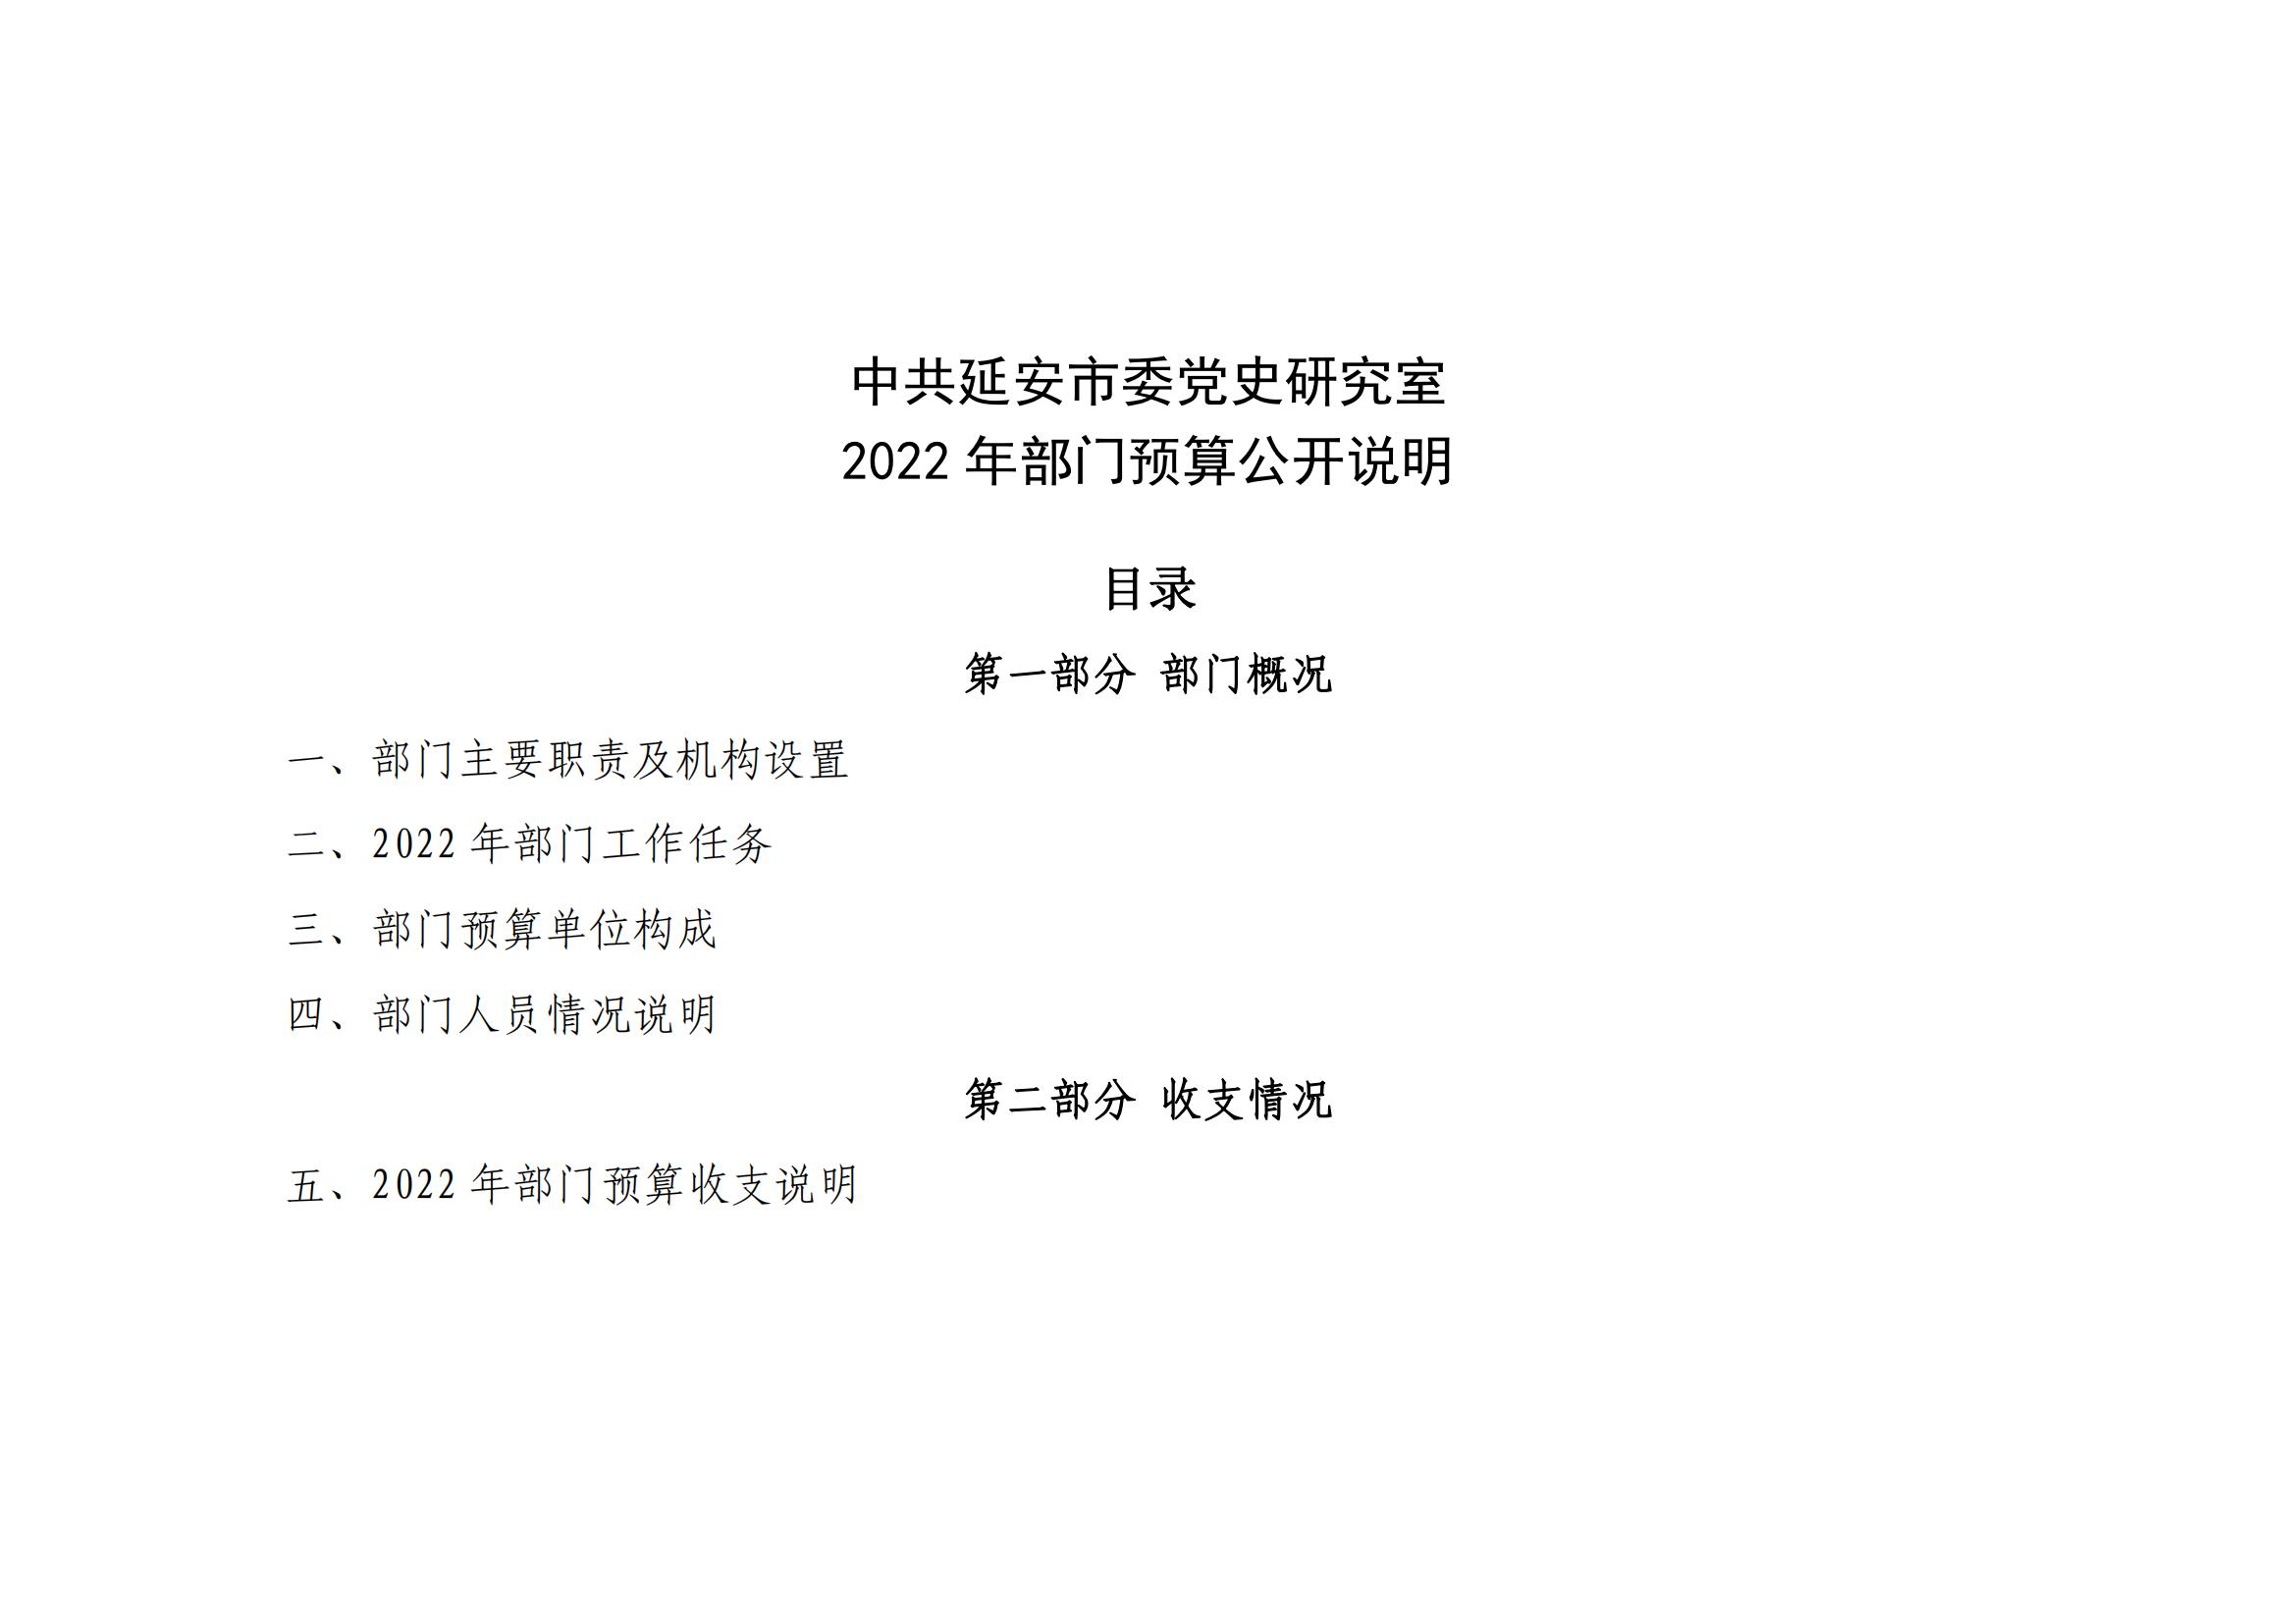 中共延安市委党史研究室2022年部门预算公开说明(图1)